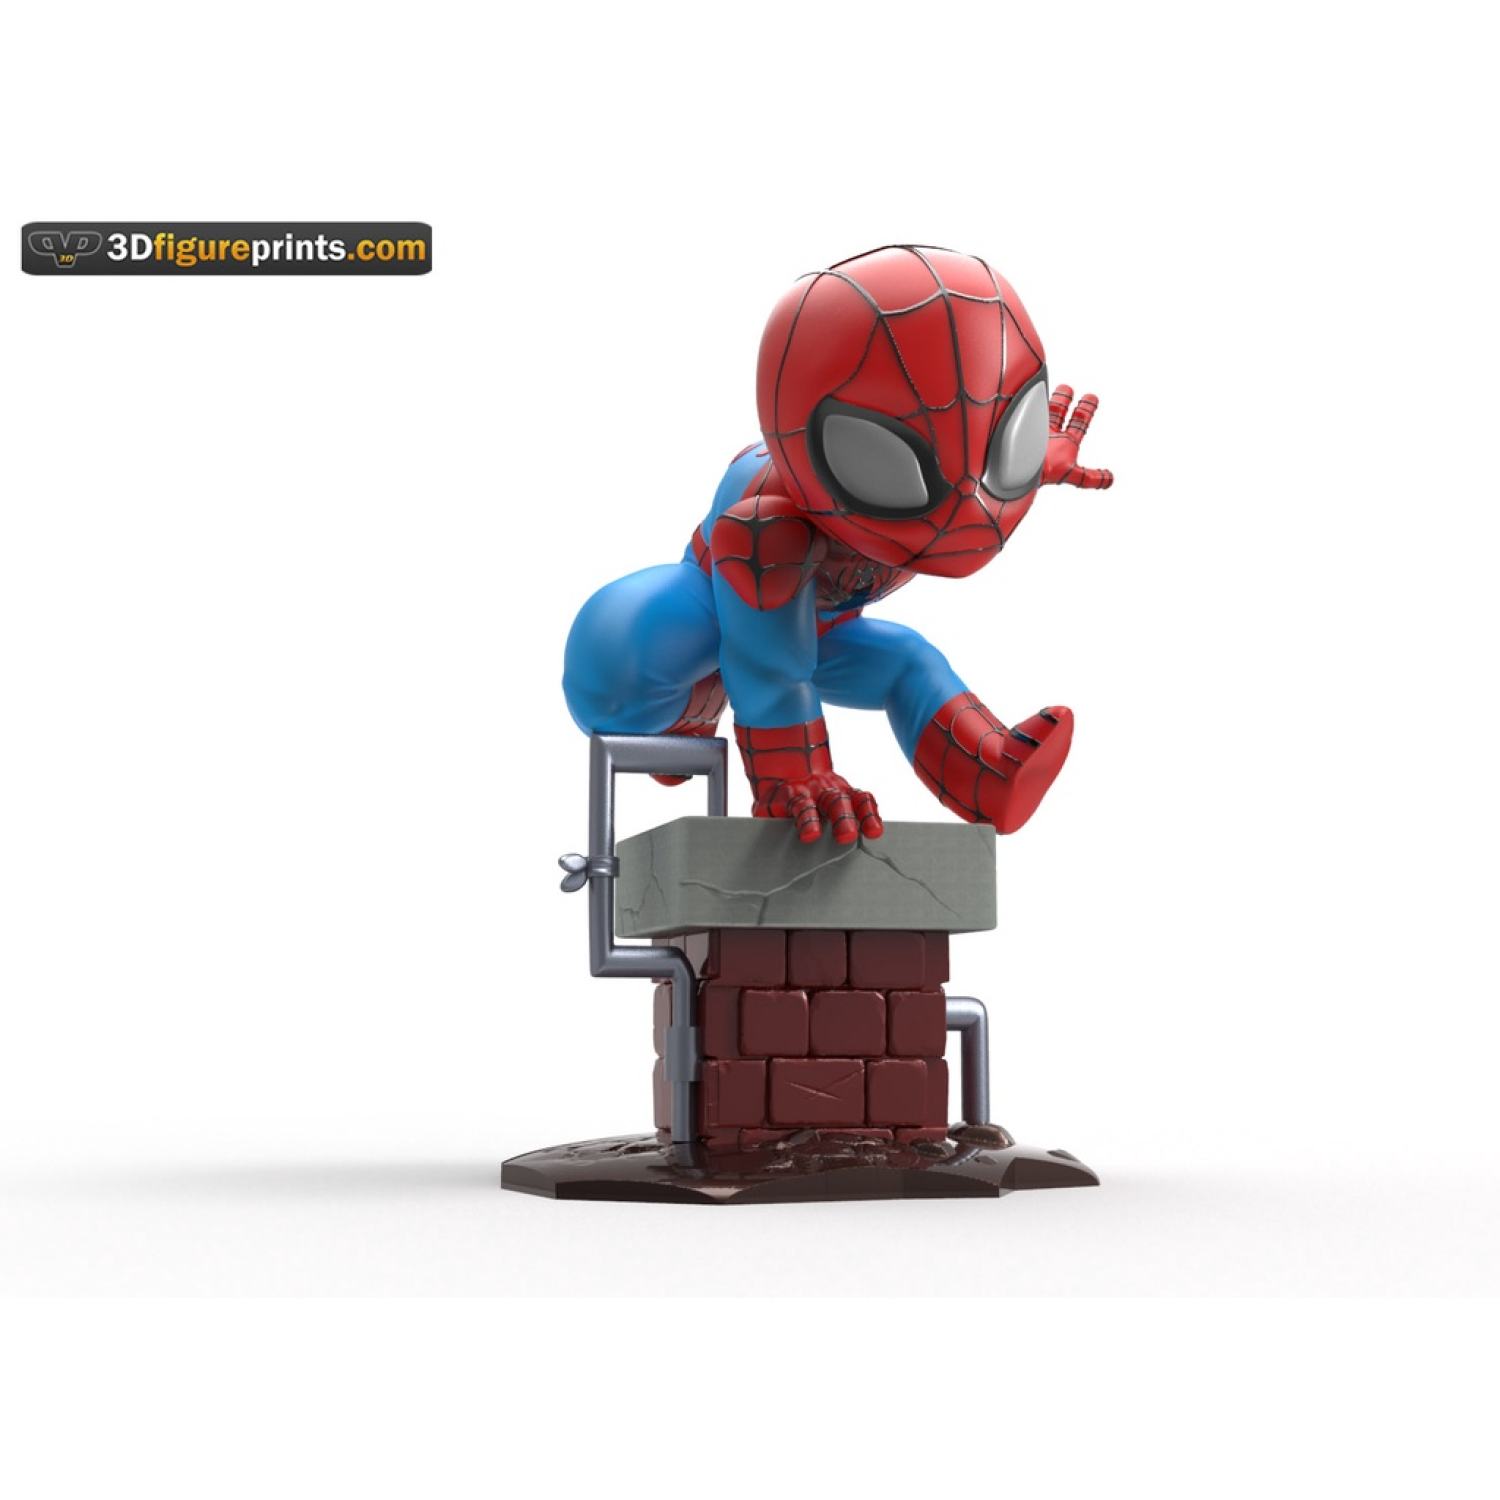 Mô hình iRon Spider Man Chibi đầu lắc lư  Avengers 3 Infinity War  Cuộc  Chiến Vô Cực  Shopee Việt Nam